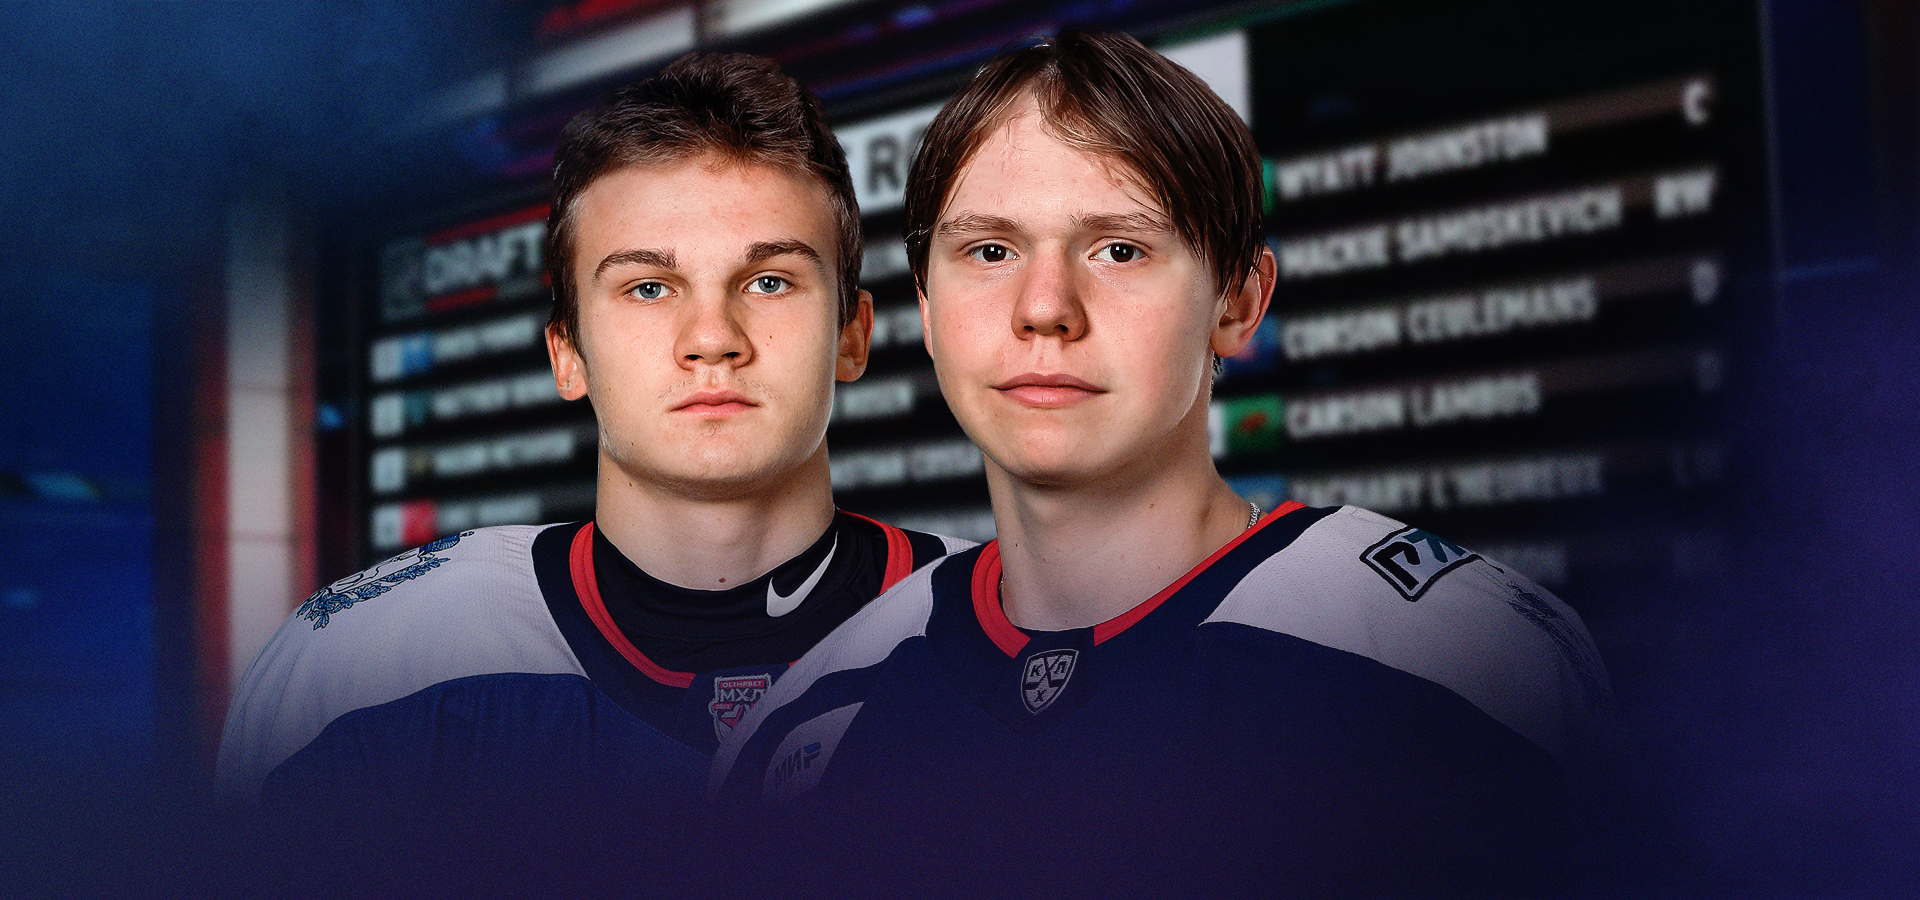 Никита Артамонов и Андрей Крутов выбраны на Драфте НХЛ